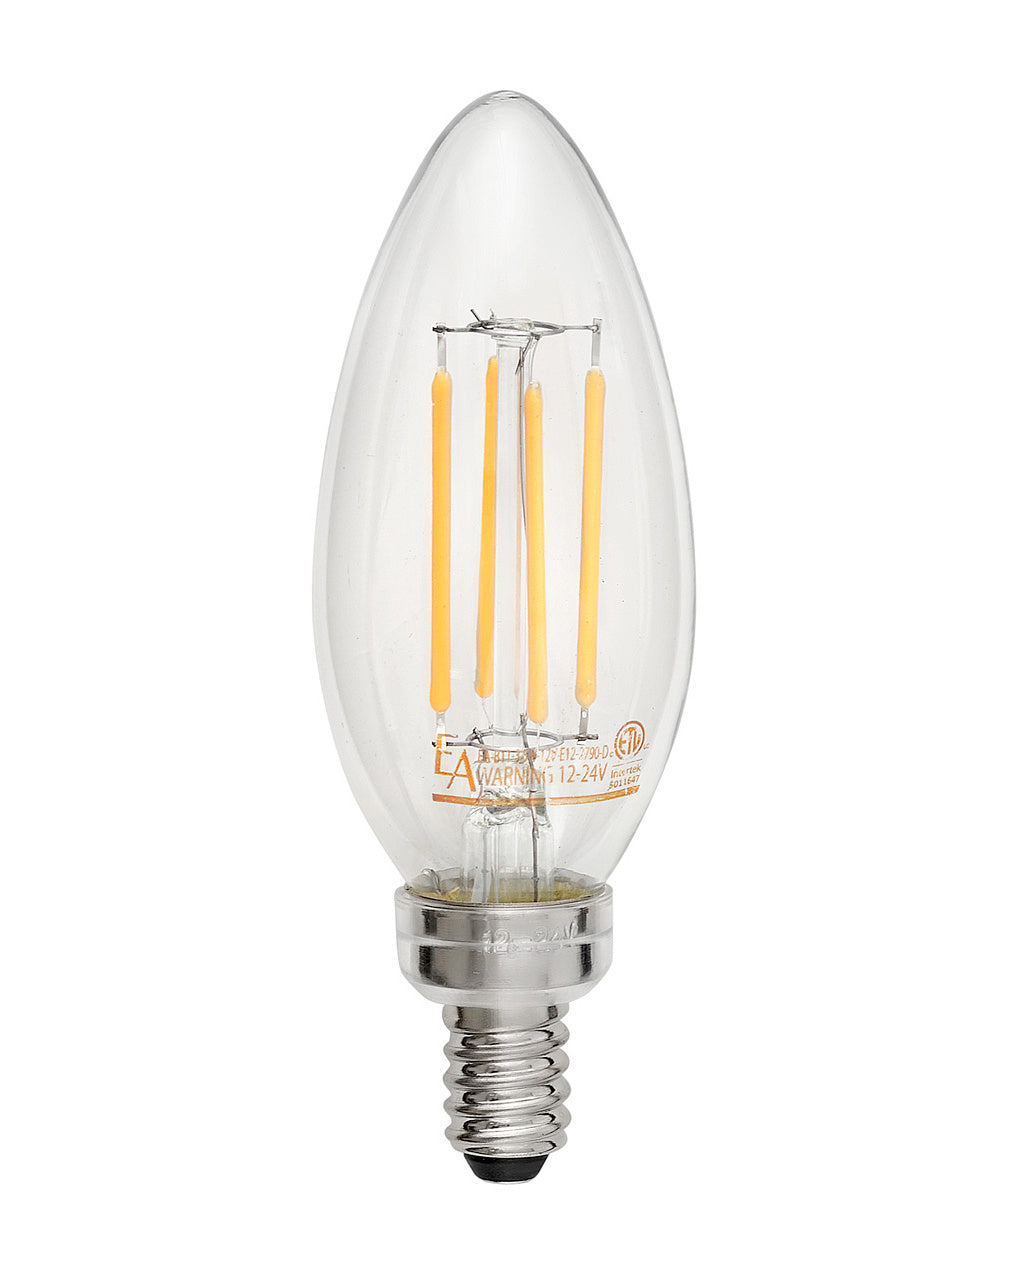 Hinkley - E12LED12V - Lamp - Bulb